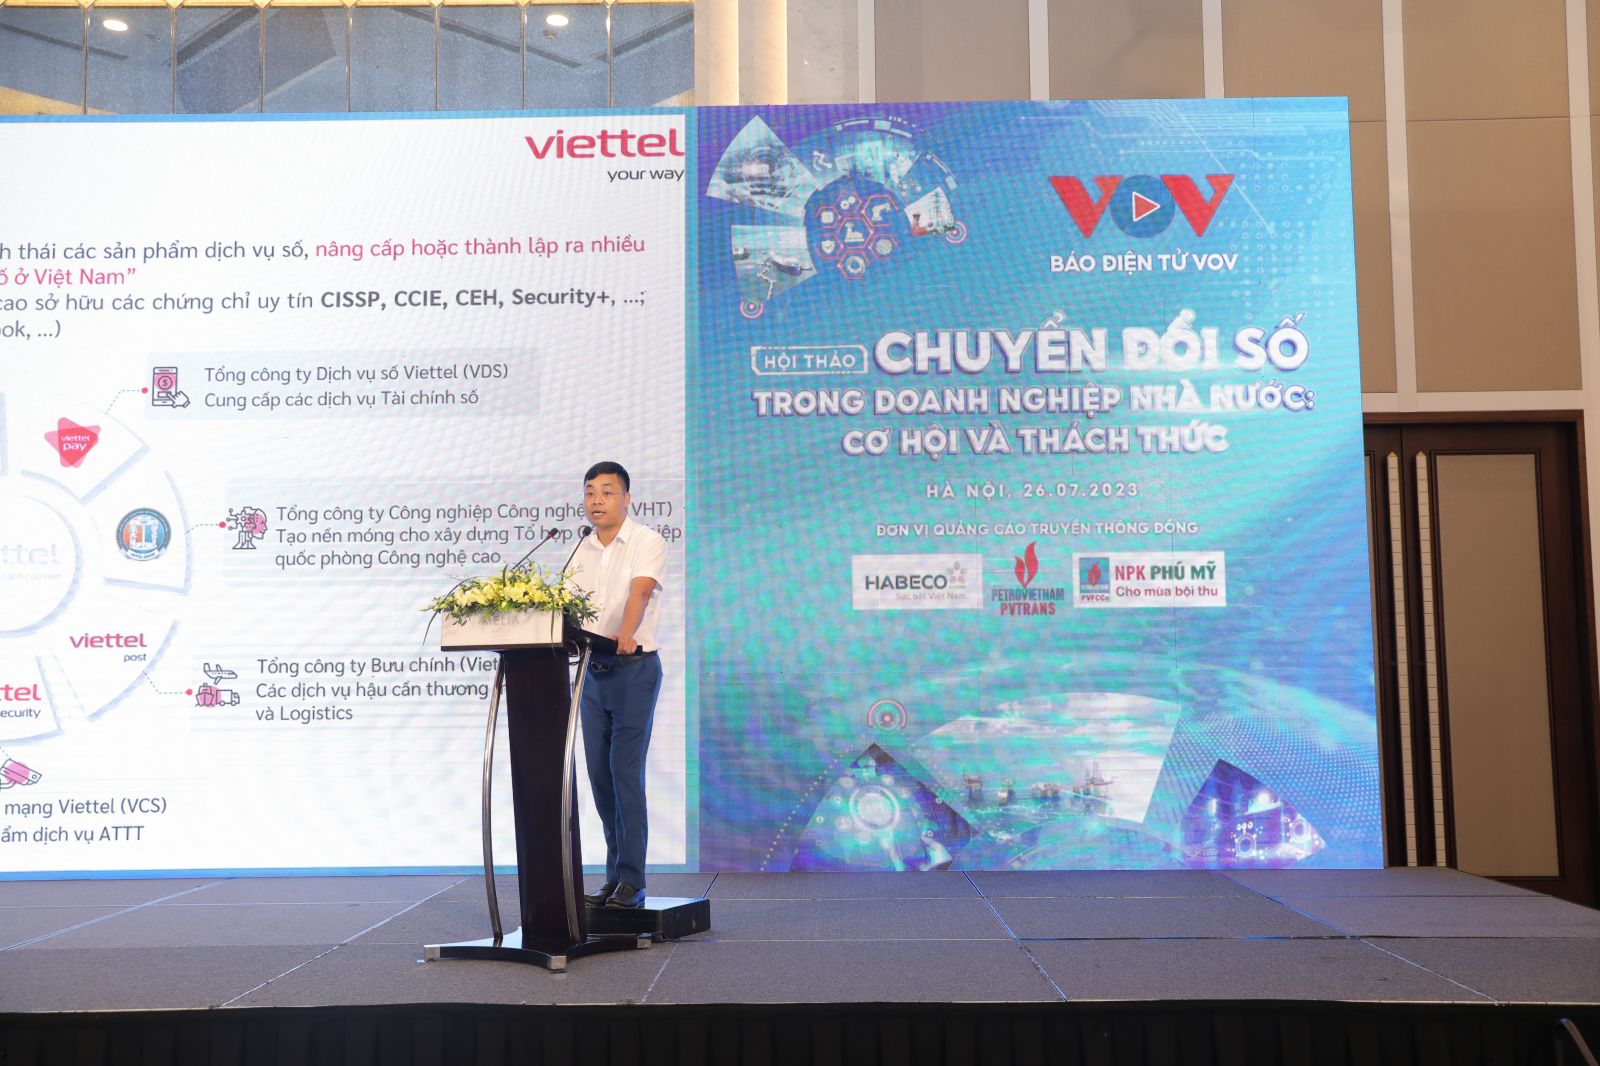 Ông Nguyễn Chí Thanh, Phó Tổng Giám đốc Tổng Công ty Giải pháp doanh nghiệp Viettel